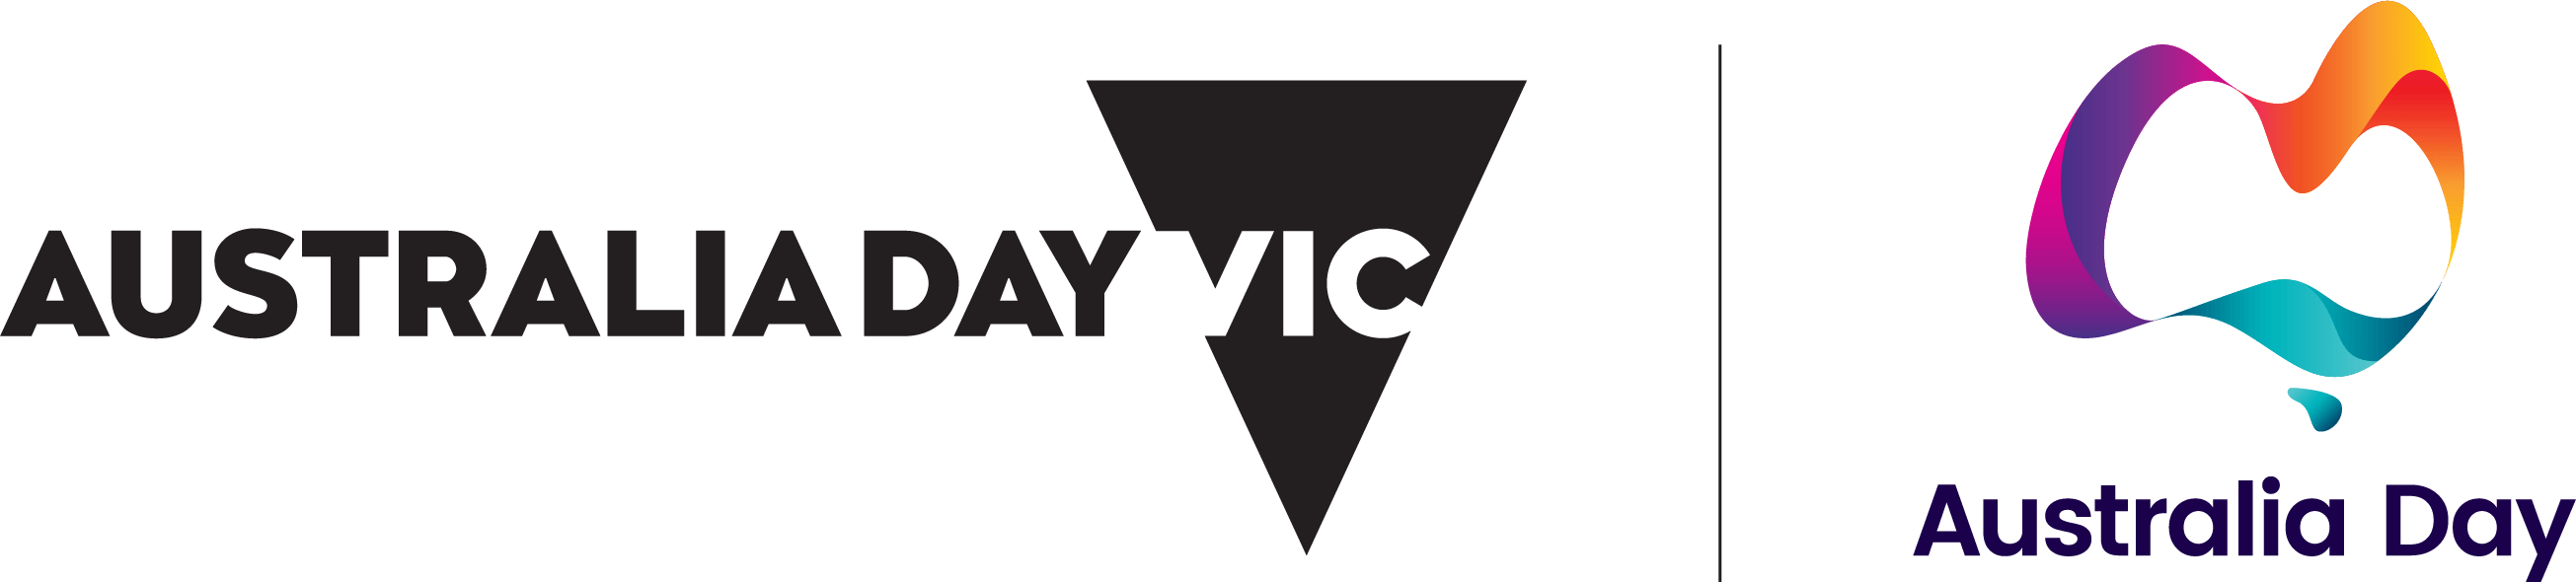 Australia Day Logo - Australia Day Victoria